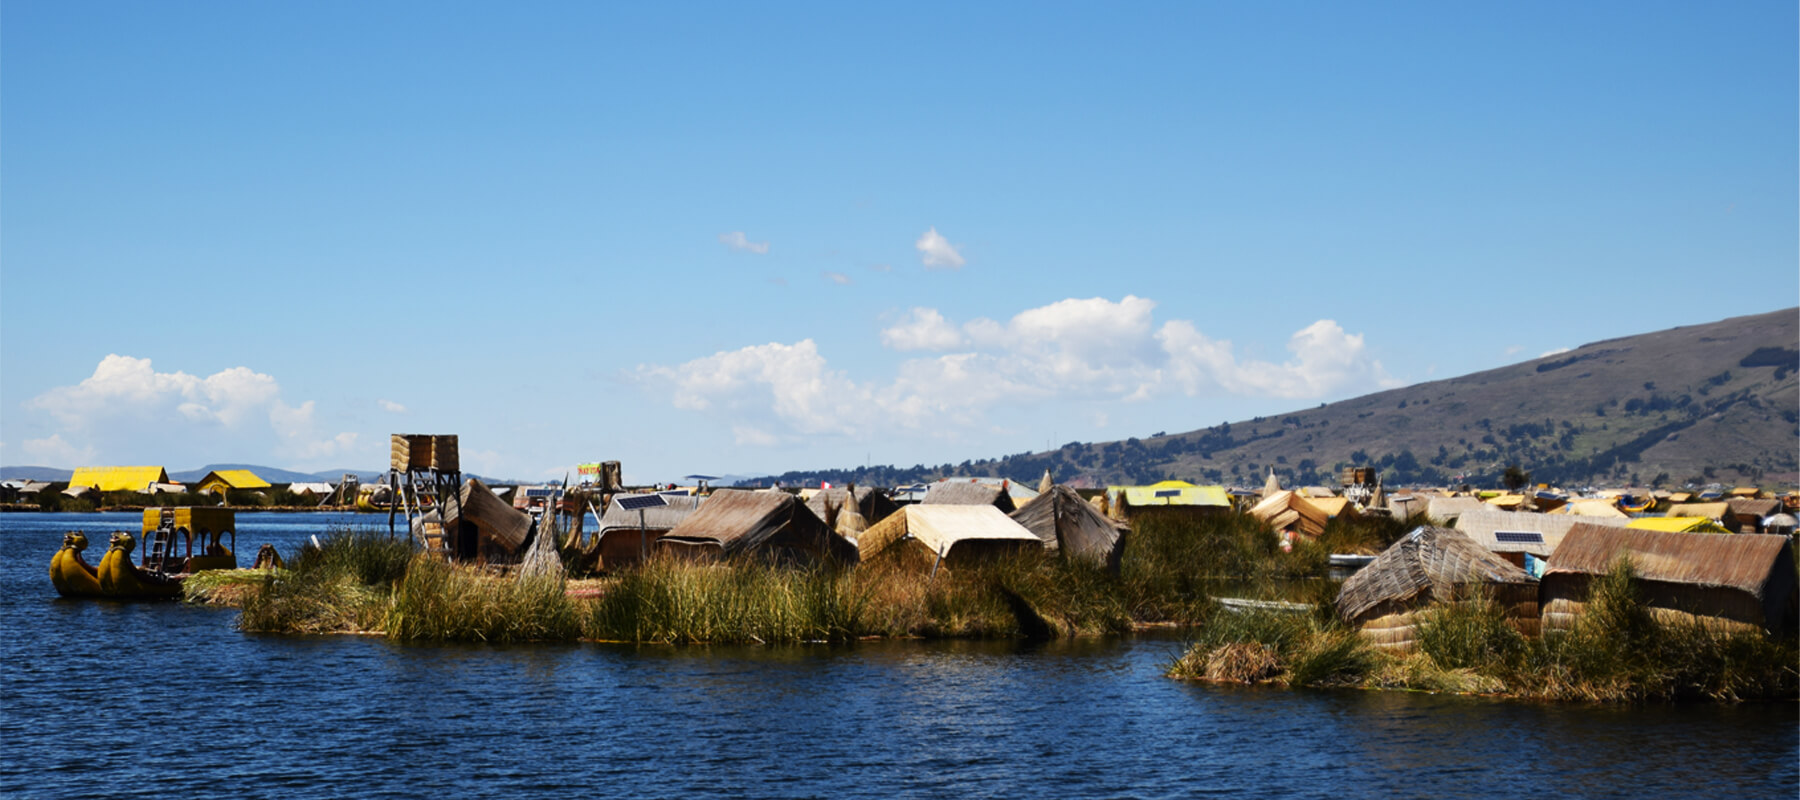 Le lac Titicaca : Visite des îles flottantes d’Uros et isla Taquile